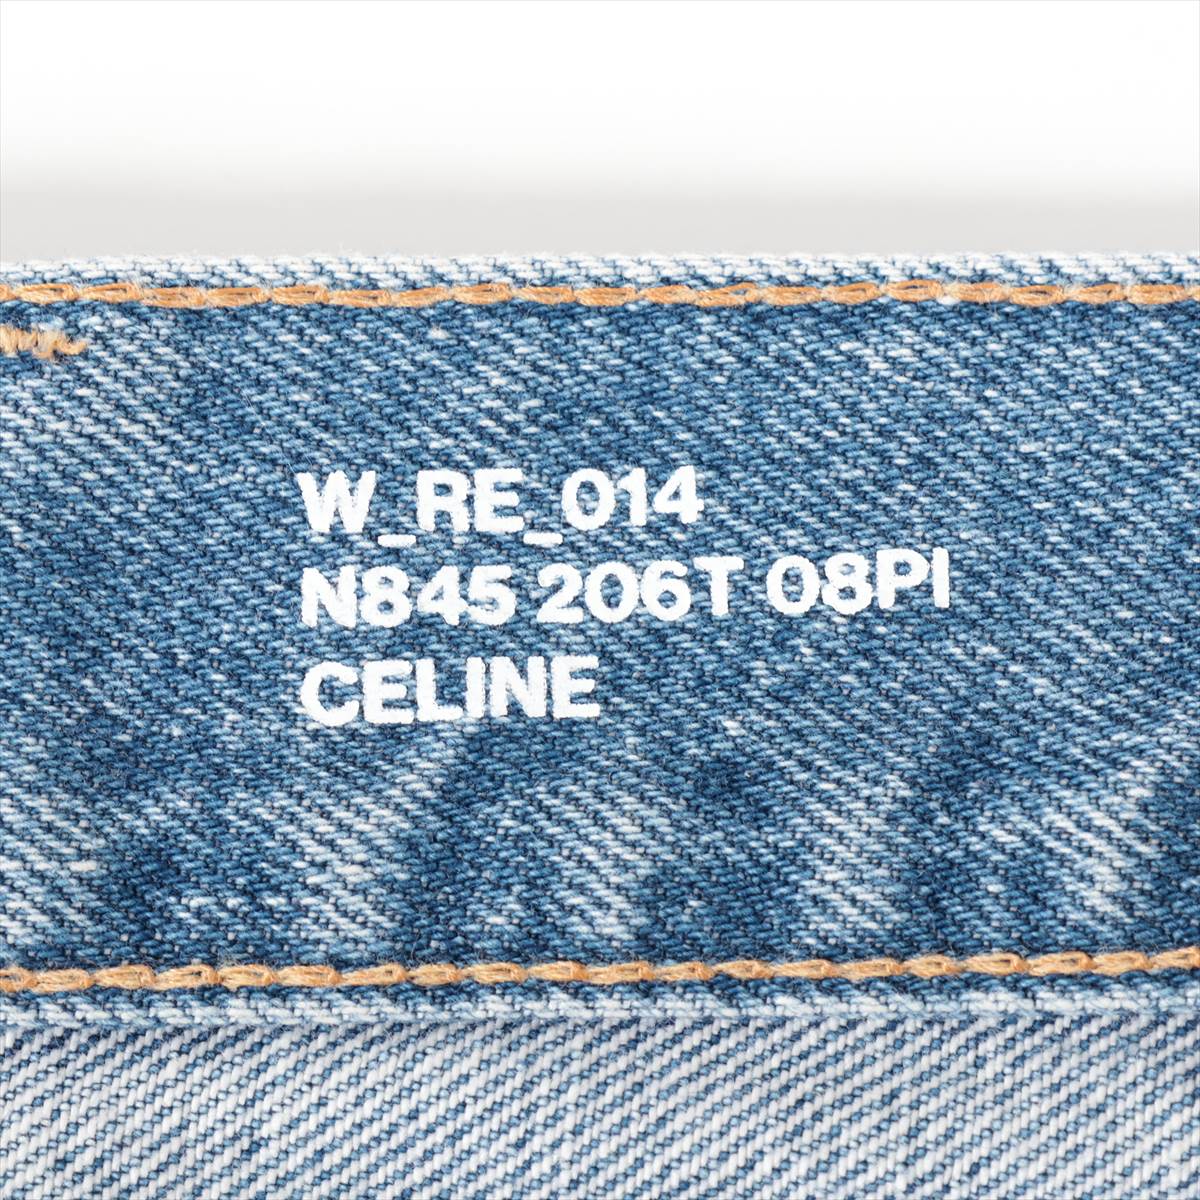 セリーヌ エディ期 コットン デニムパンツ 29 メンズ ブルー  N845 206T ウェスリーローライズジーンズ